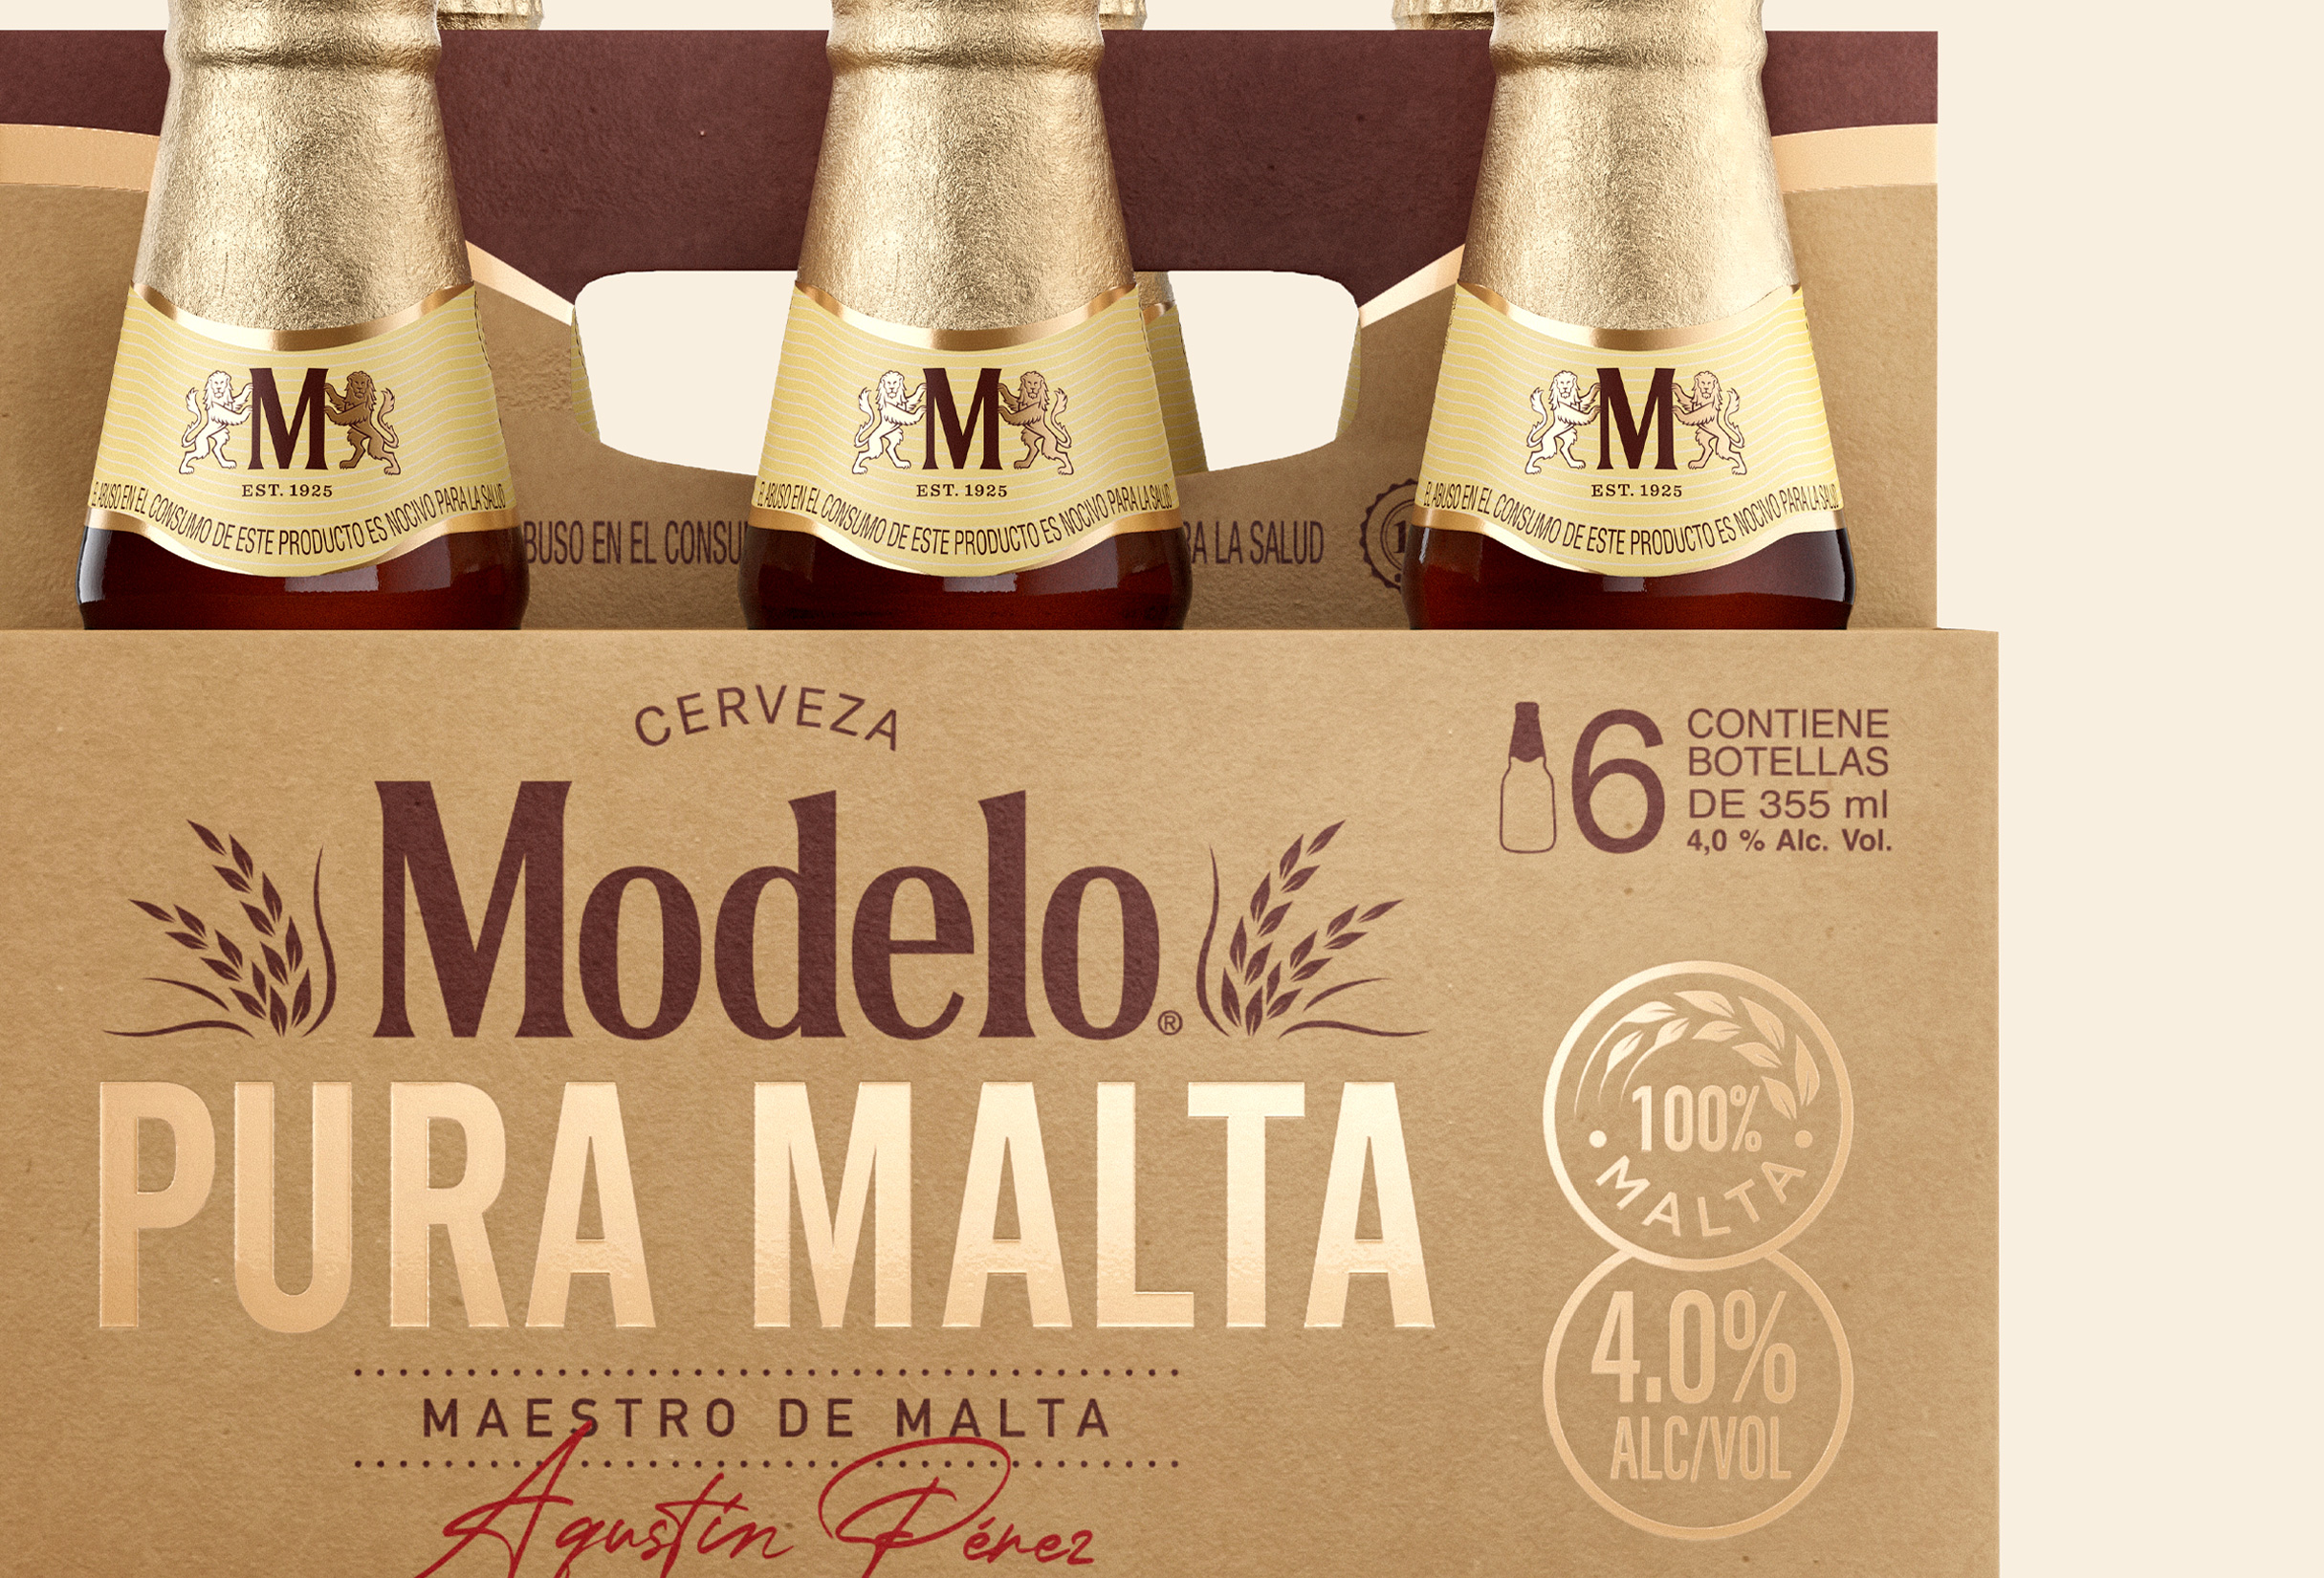 Modelo Pura Malta Is For Good | Dieline - Design, Branding & Packaging  Inspiration